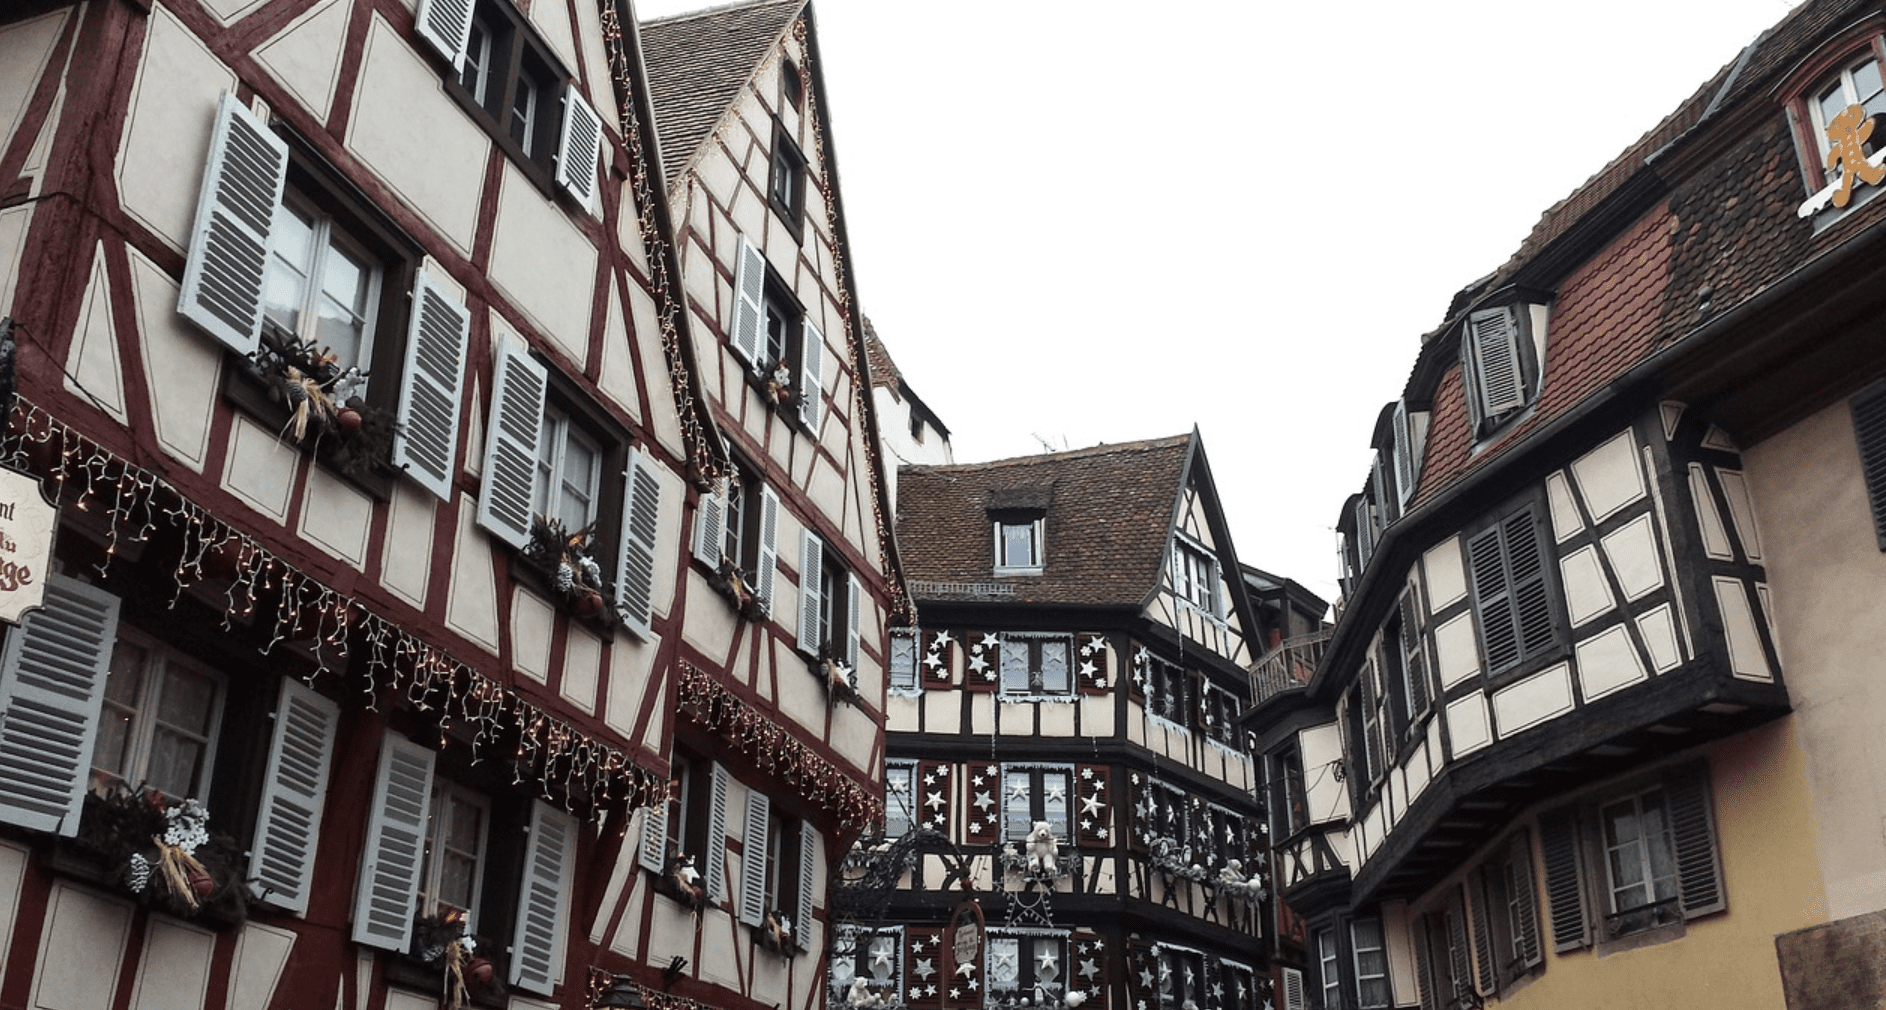 Strasbourg à Noël